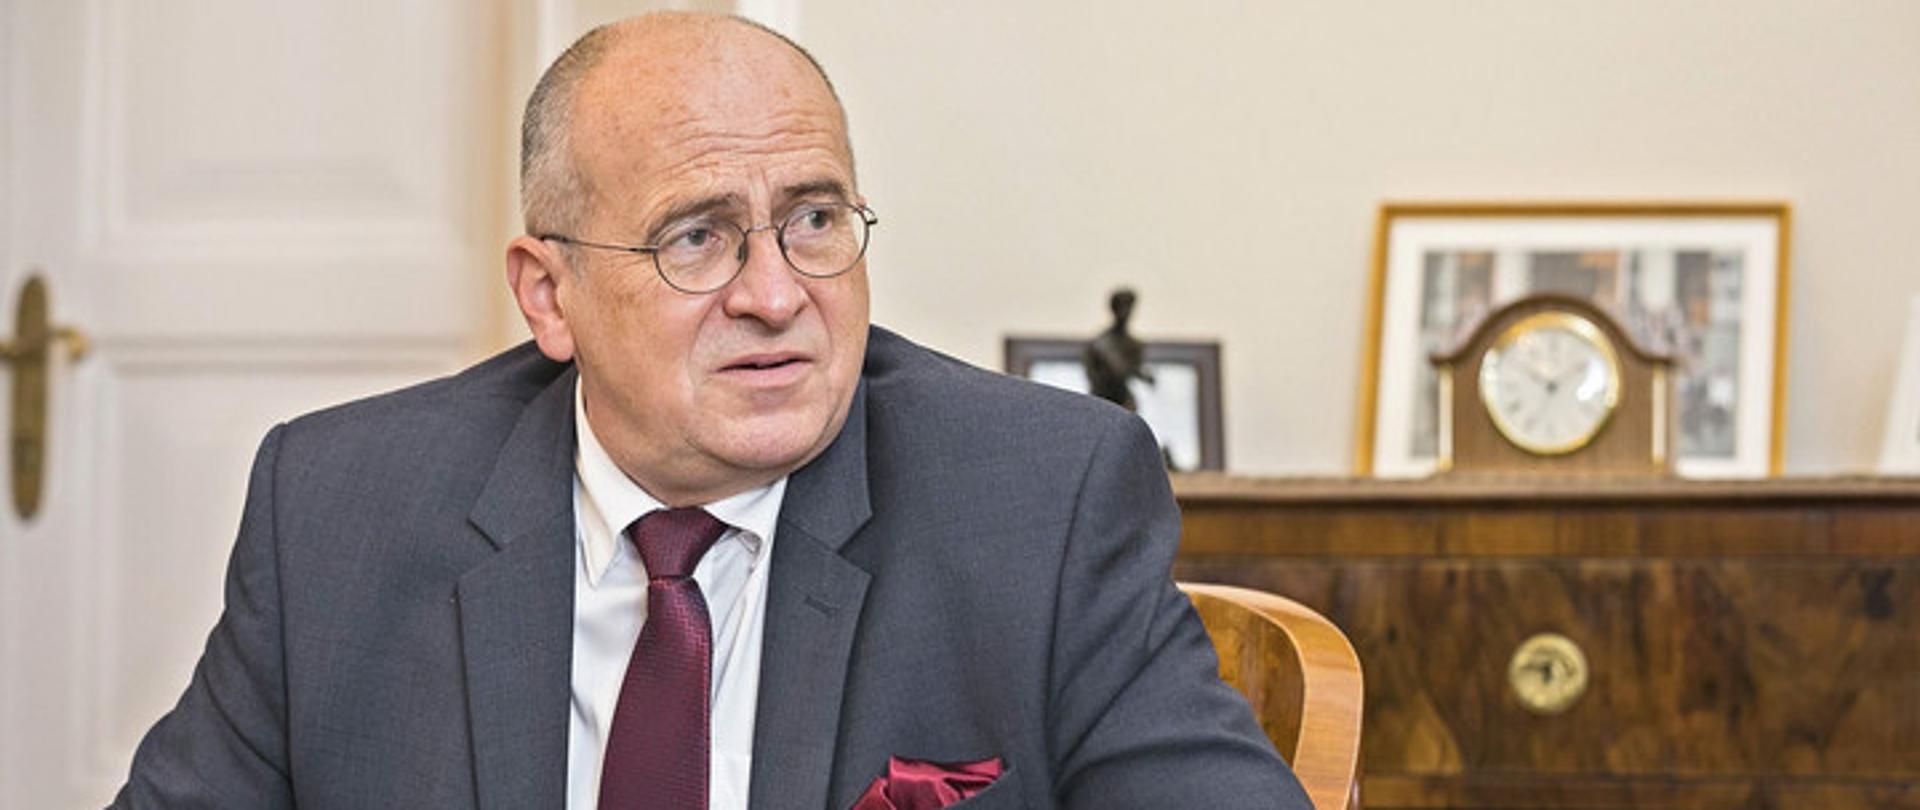 Zbigniew Rau külügyminiszter